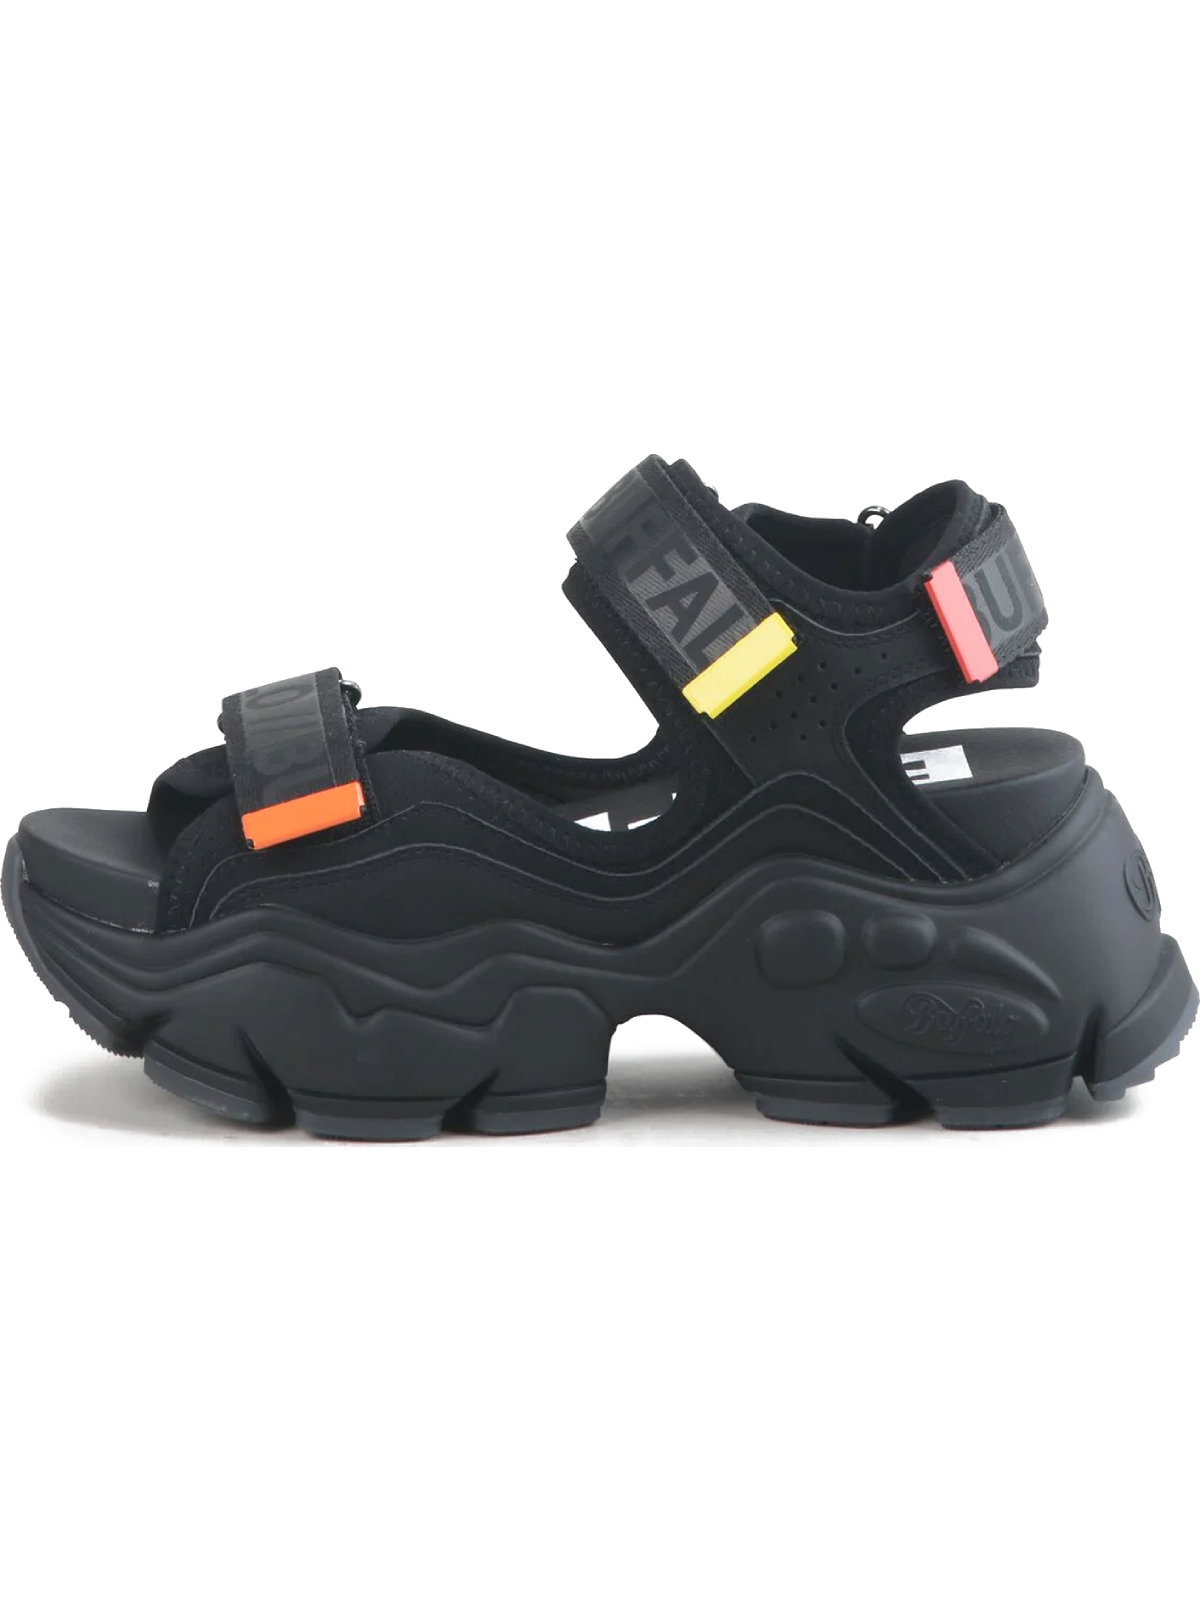 Γυναικεία Παπούτσια Buffalo | Binary Platform Sandals | Womens Shoes